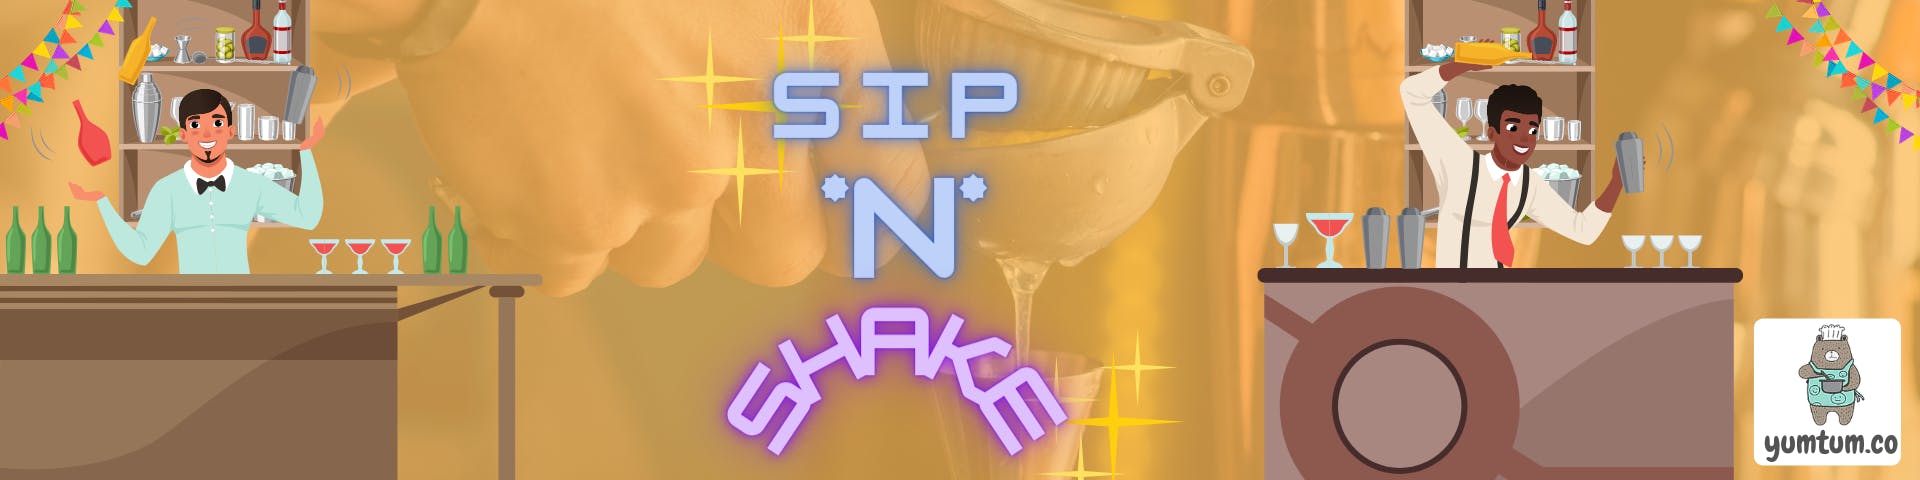 Sip N Shake.png